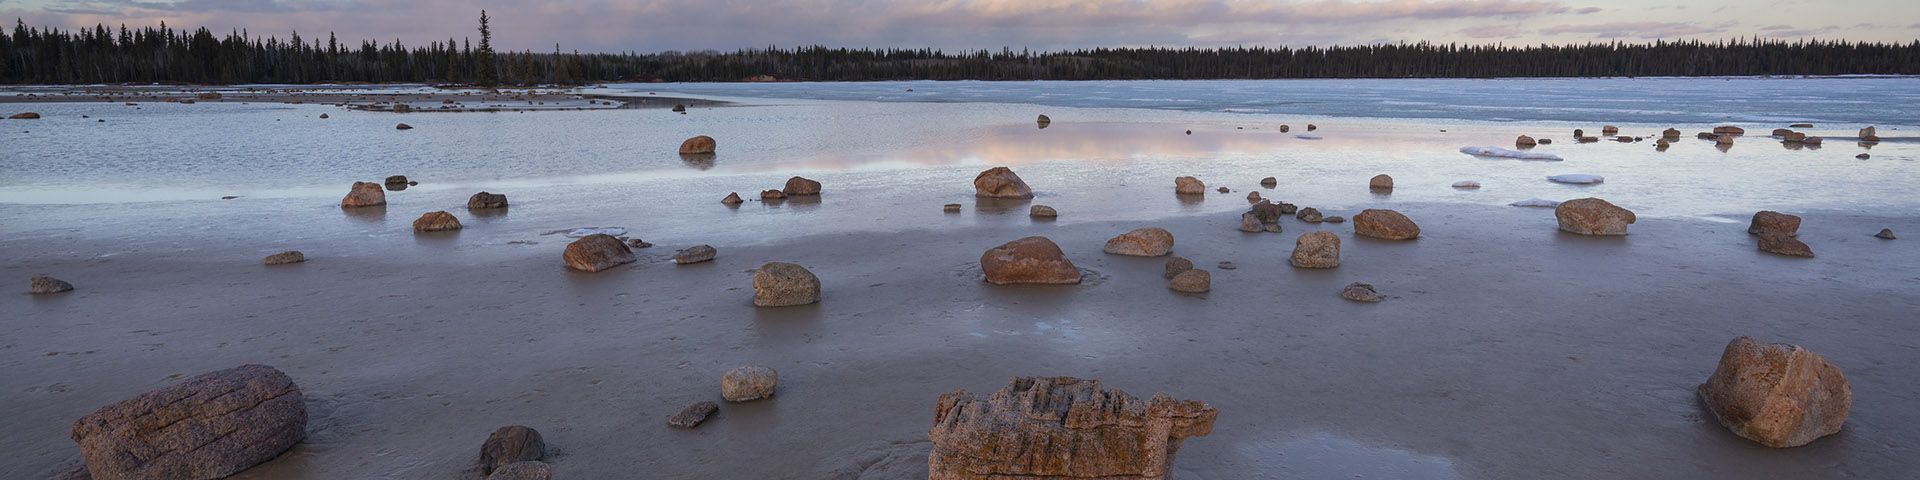 Une photo du lac Grosbeak et des blocs erratiques (rochers) qui parsèment le sol mouillé. C’est le crépuscule et le soleil couchant donne au ciel une teinte et rose et bleue.